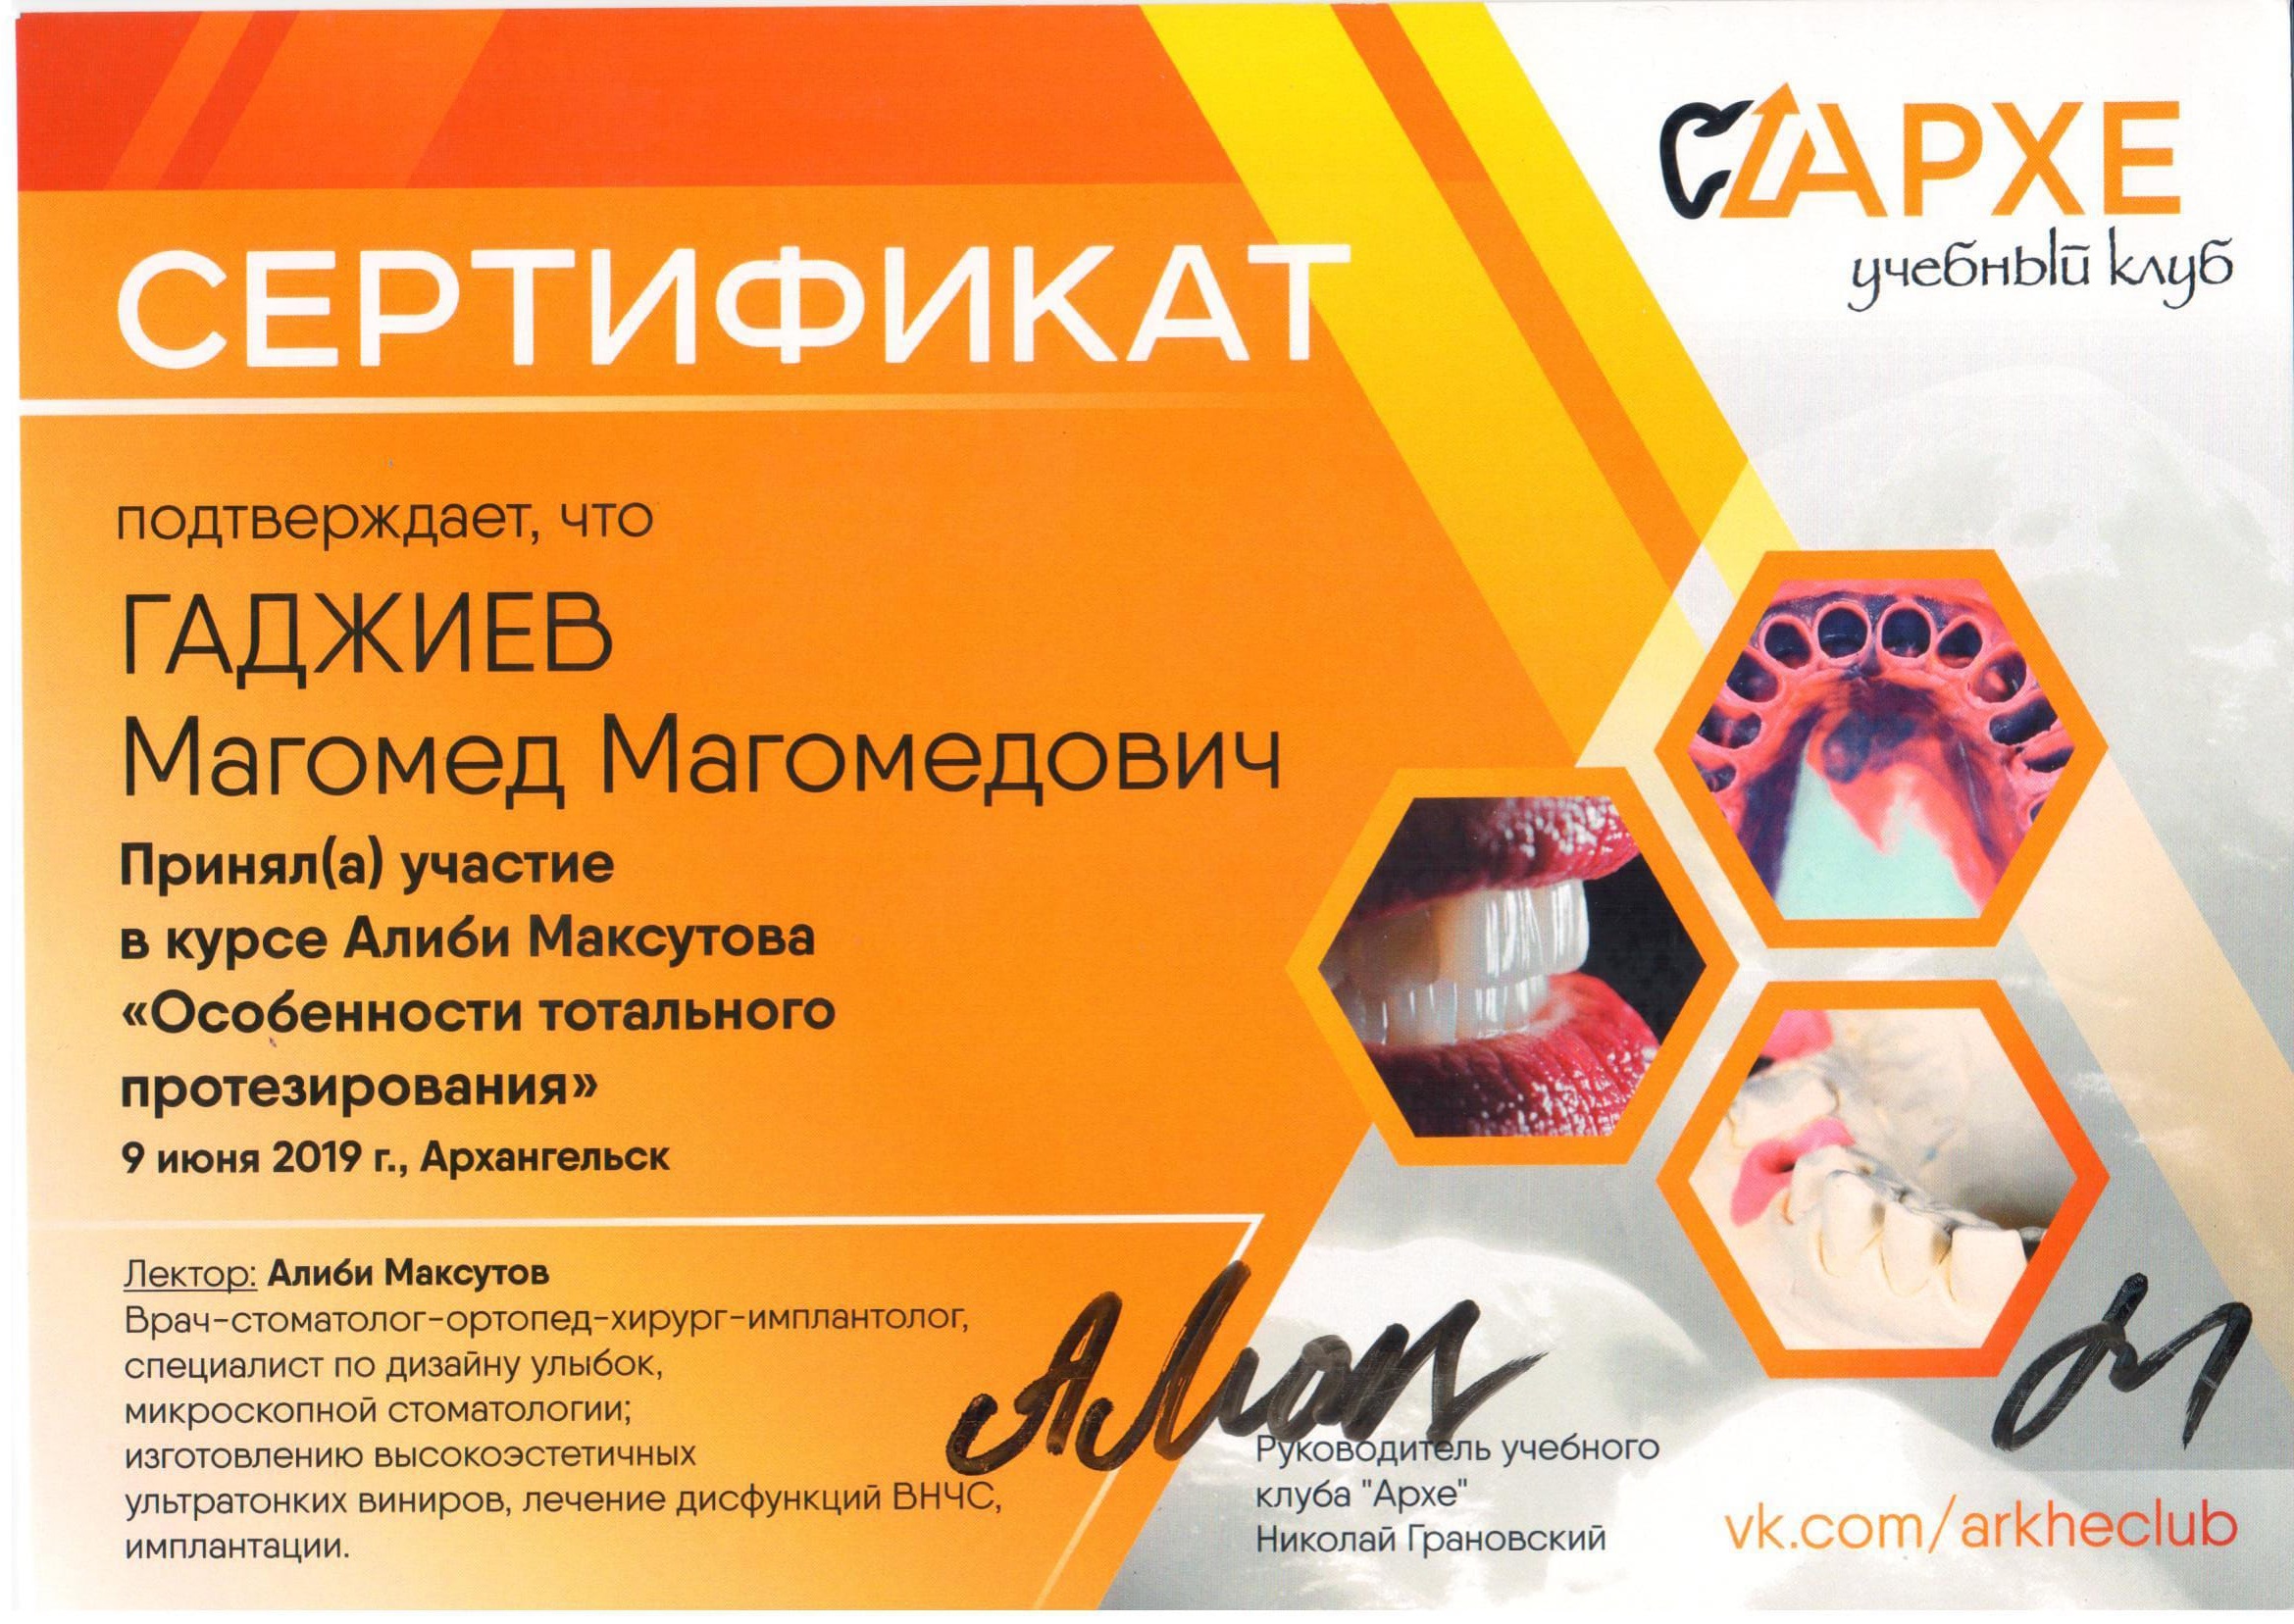 сертификат Гаджиев